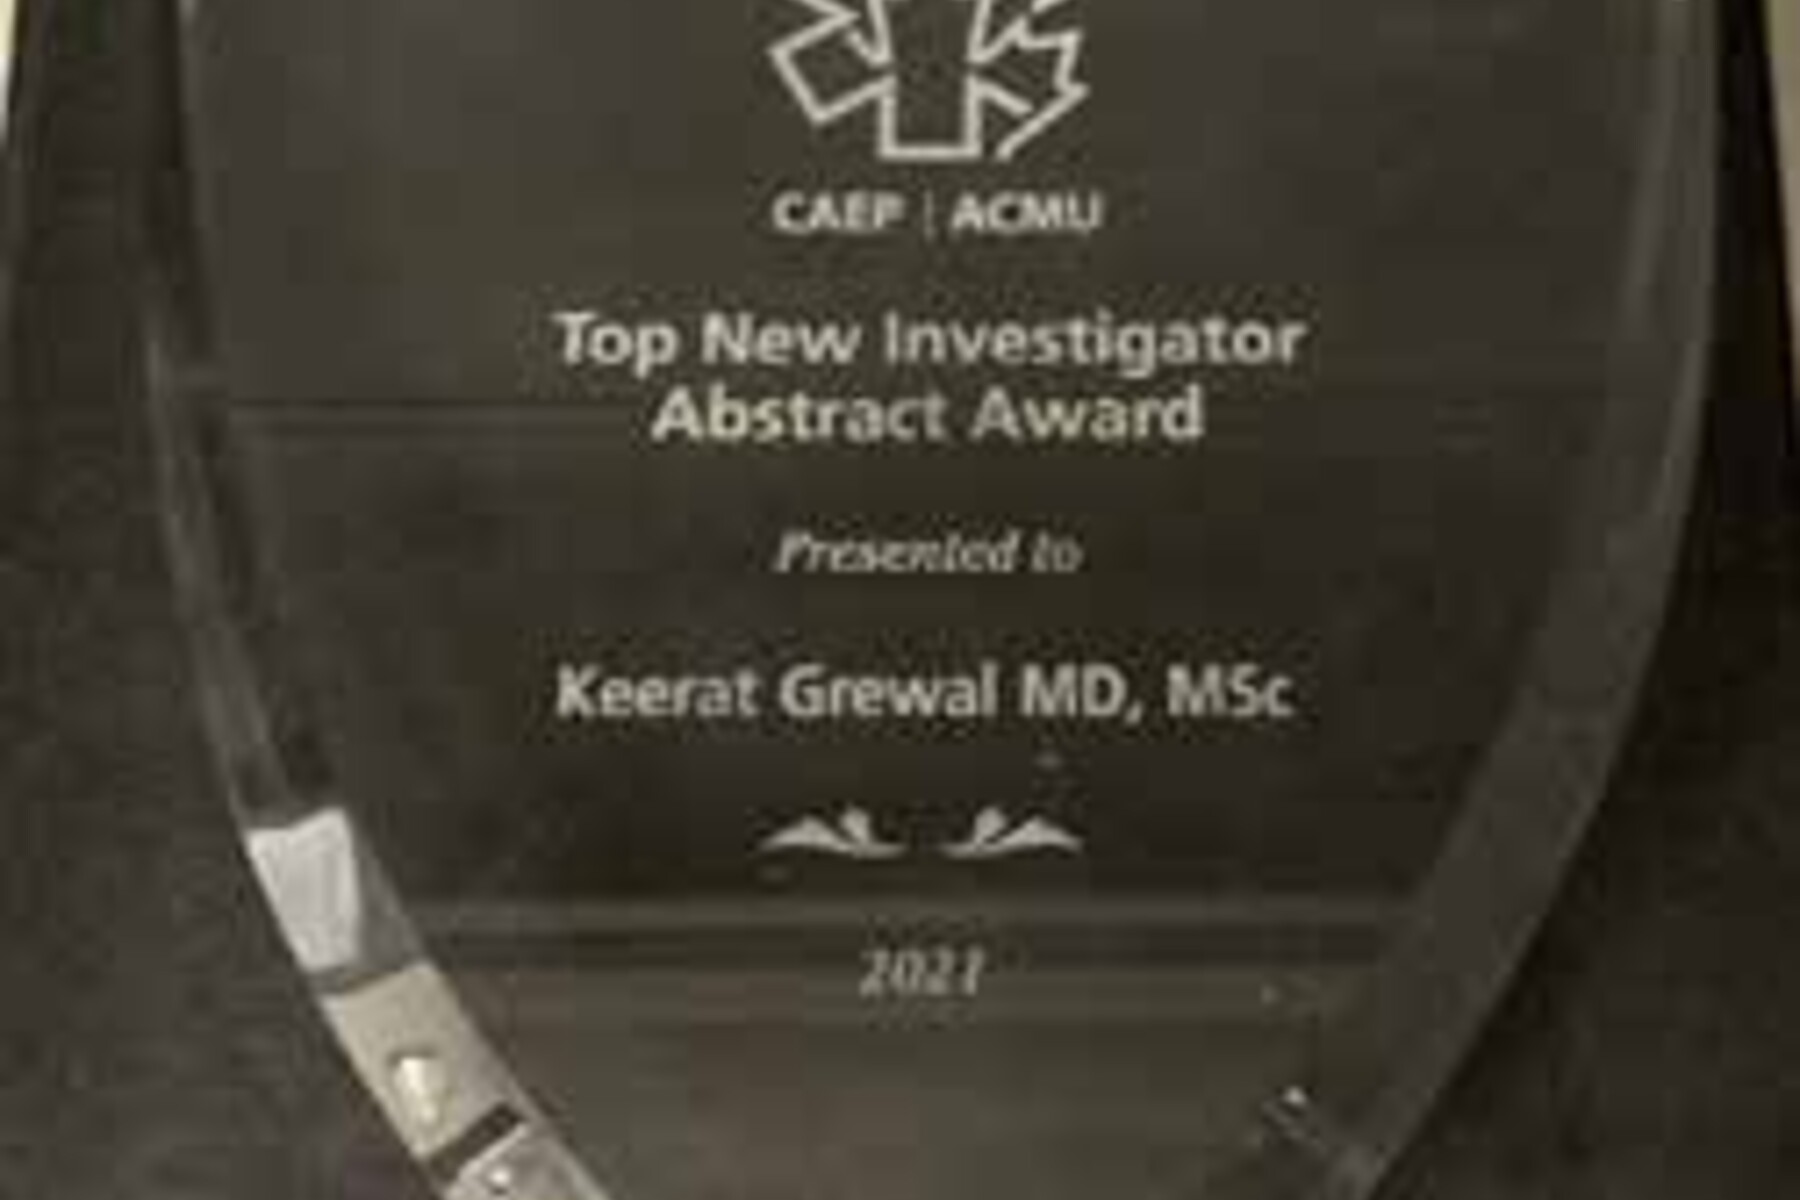 image of CAEP Top New Investigator Abstract Award for Keerat Grewal